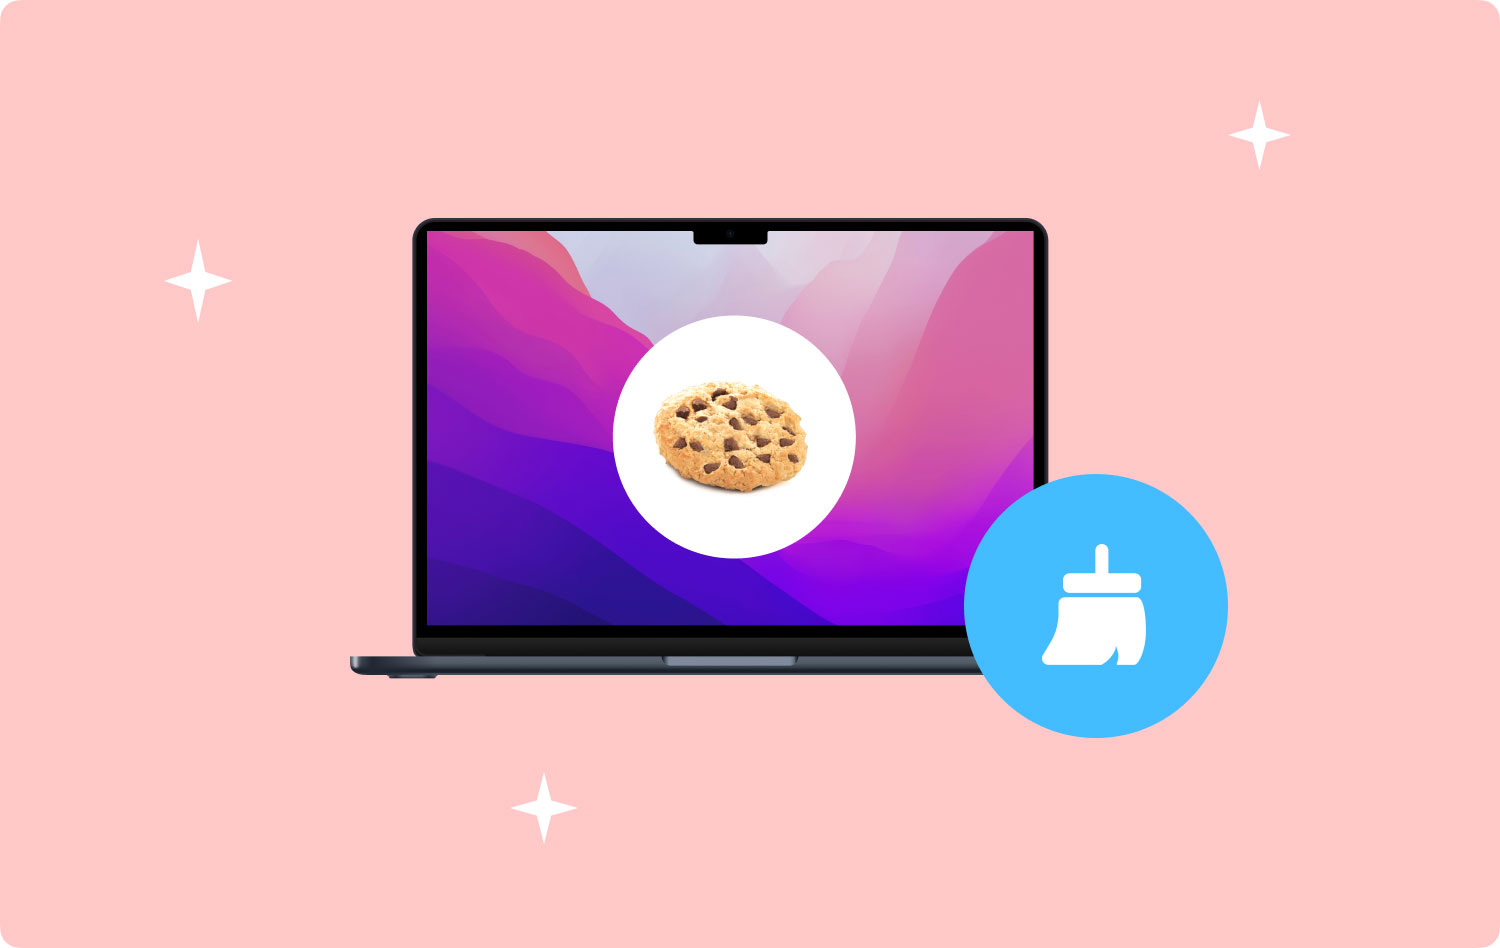 So löschen Sie Cookies auf dem Mac